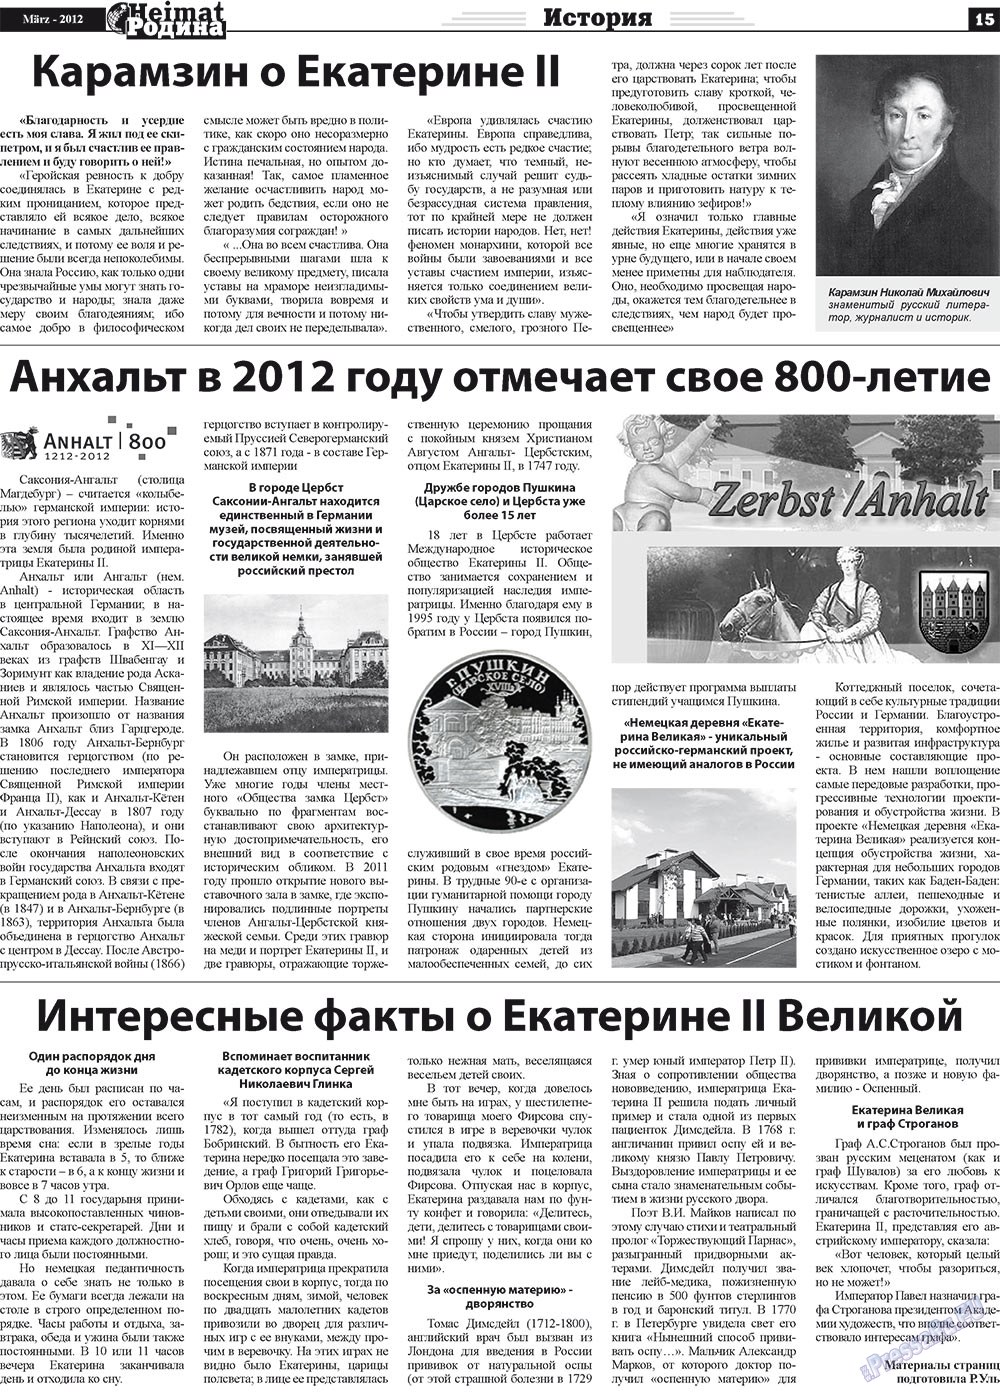 Heimat-Родина (газета). 2012 год, номер 3, стр. 15